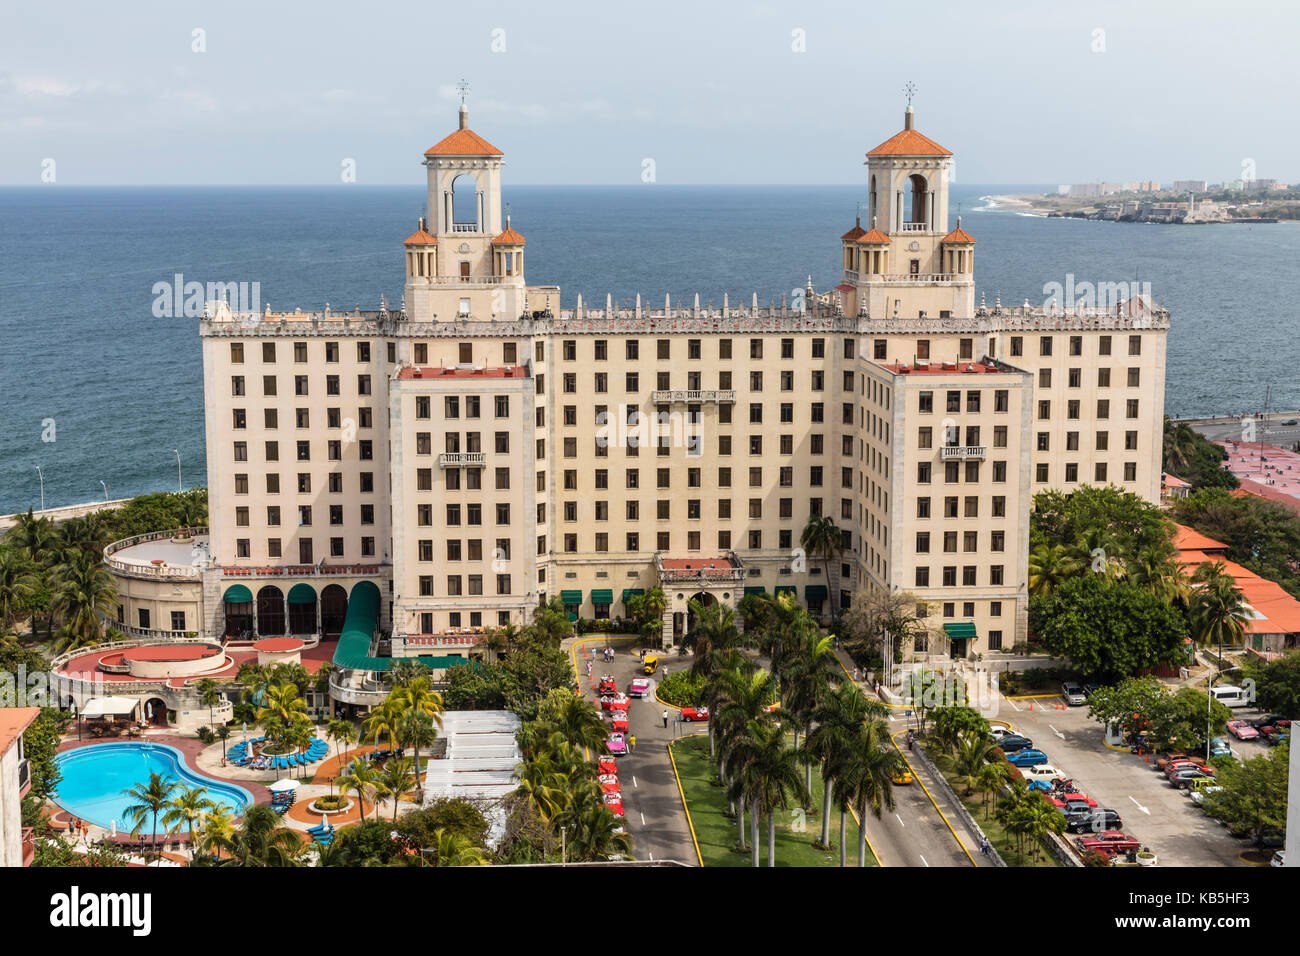 L'historique hôtel nacional de cuba situé sur le Malecon au milieu de Vedado, La Havane, Cuba, Antilles, Amérique centrale Banque D'Images